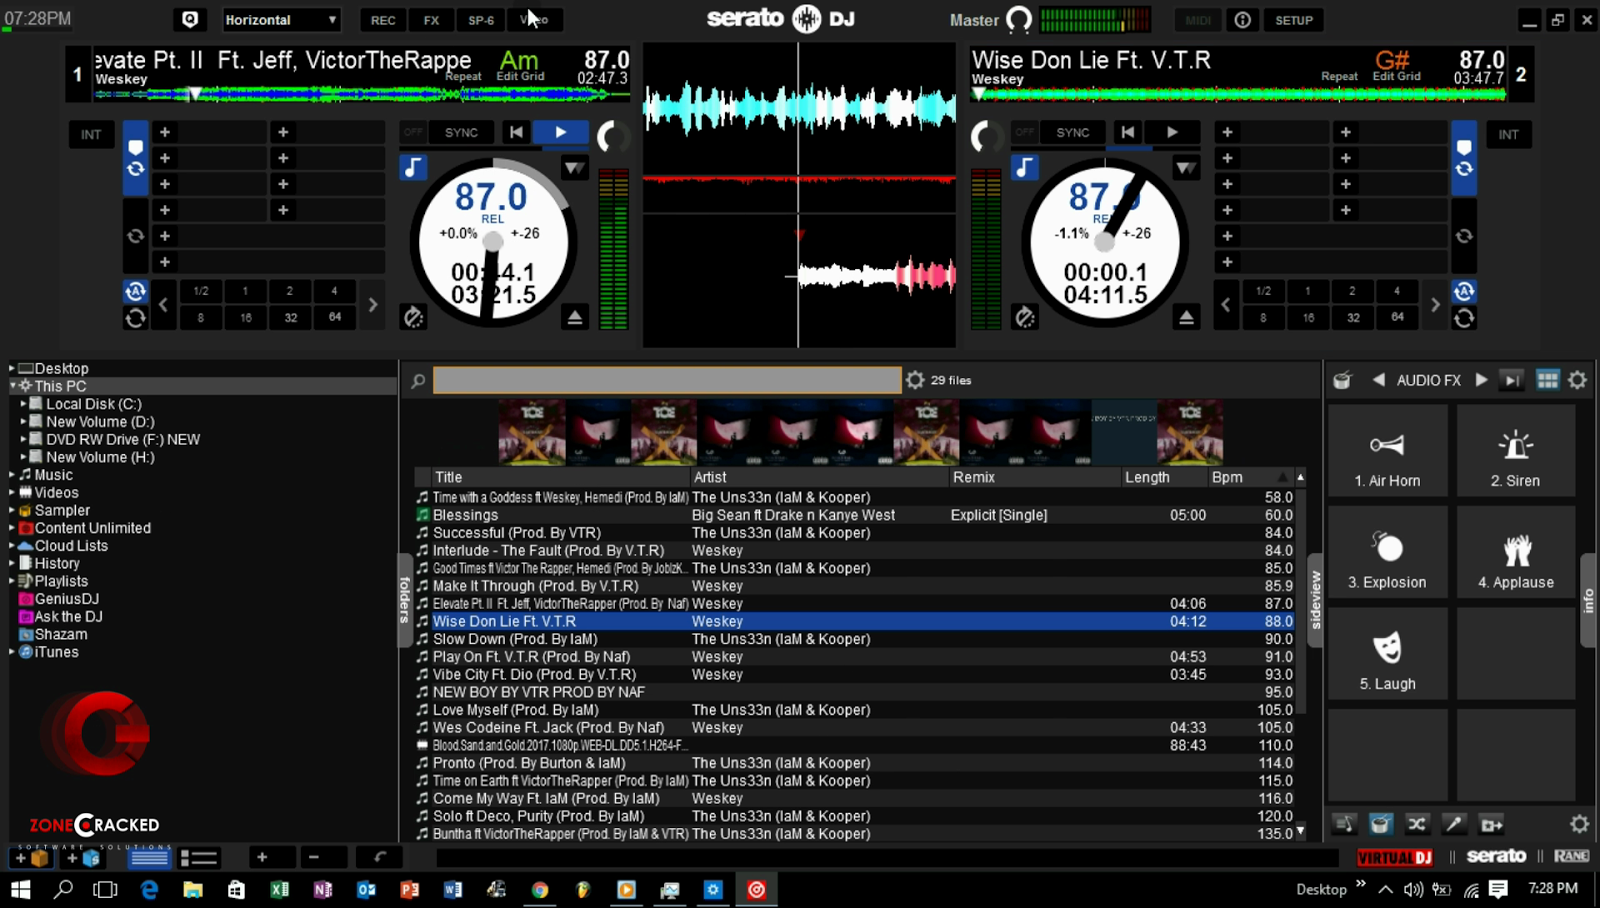 download the last version for mac Serato DJ Pro 3.0.12.266